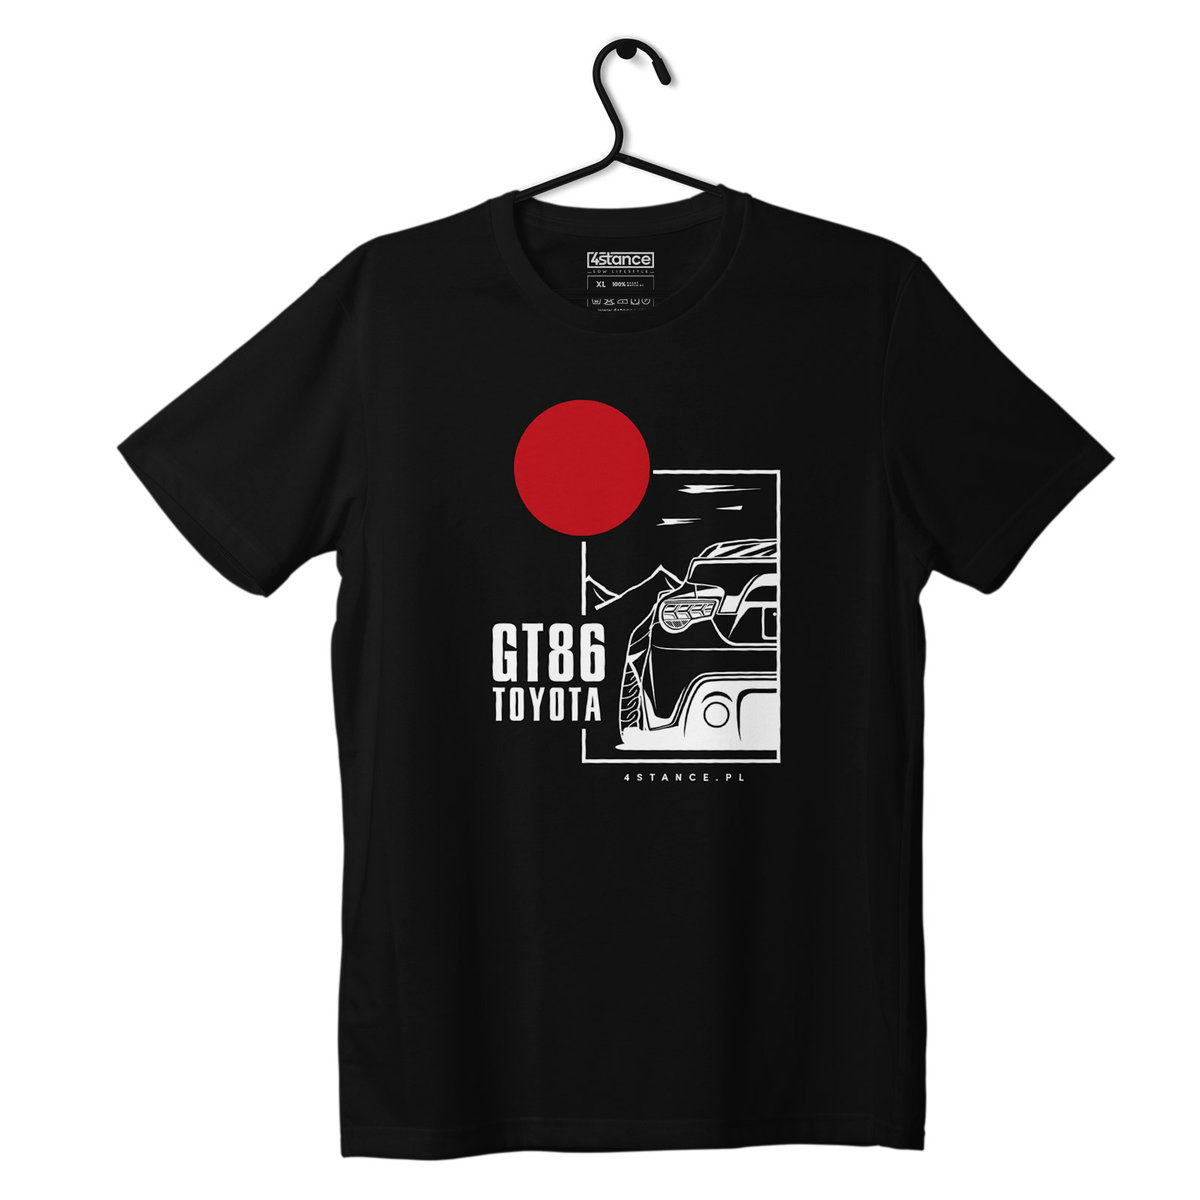 Zdjęcia - Odzież motocyklowa Toyota Czarny T-shirt koszulka  GT86-3XL 